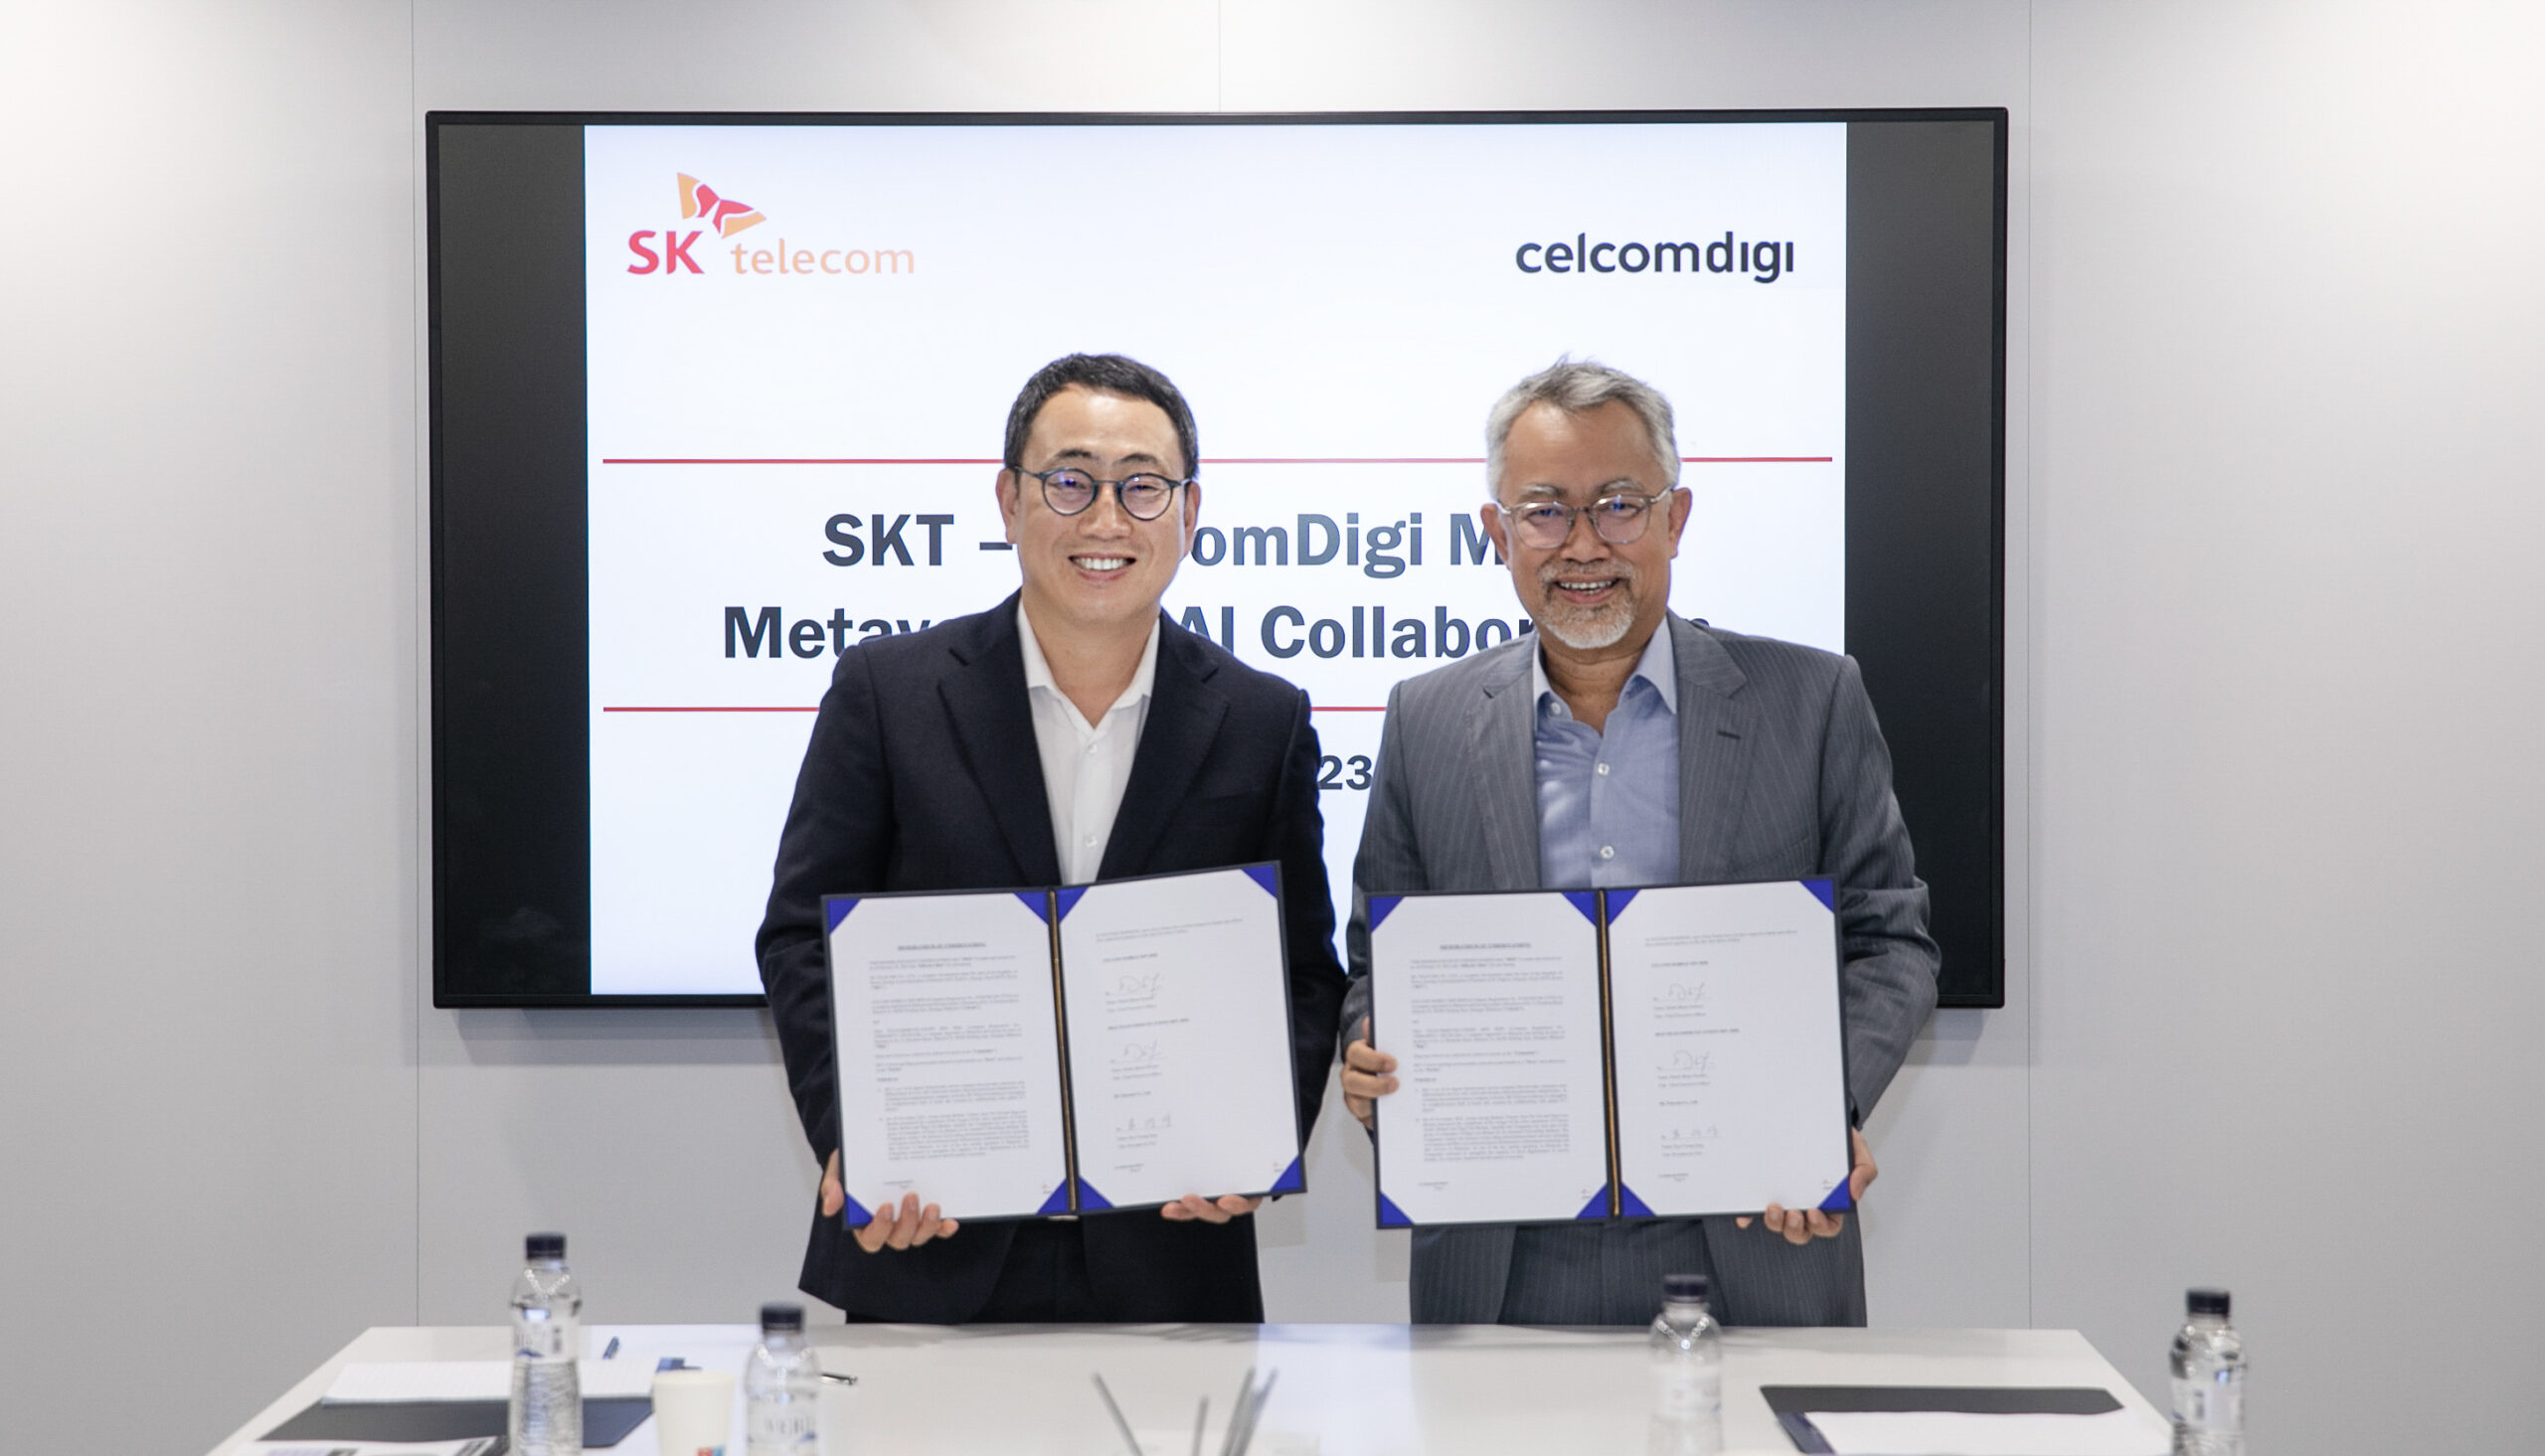 Image 1 CelcomDigi x SK Telecom scaled